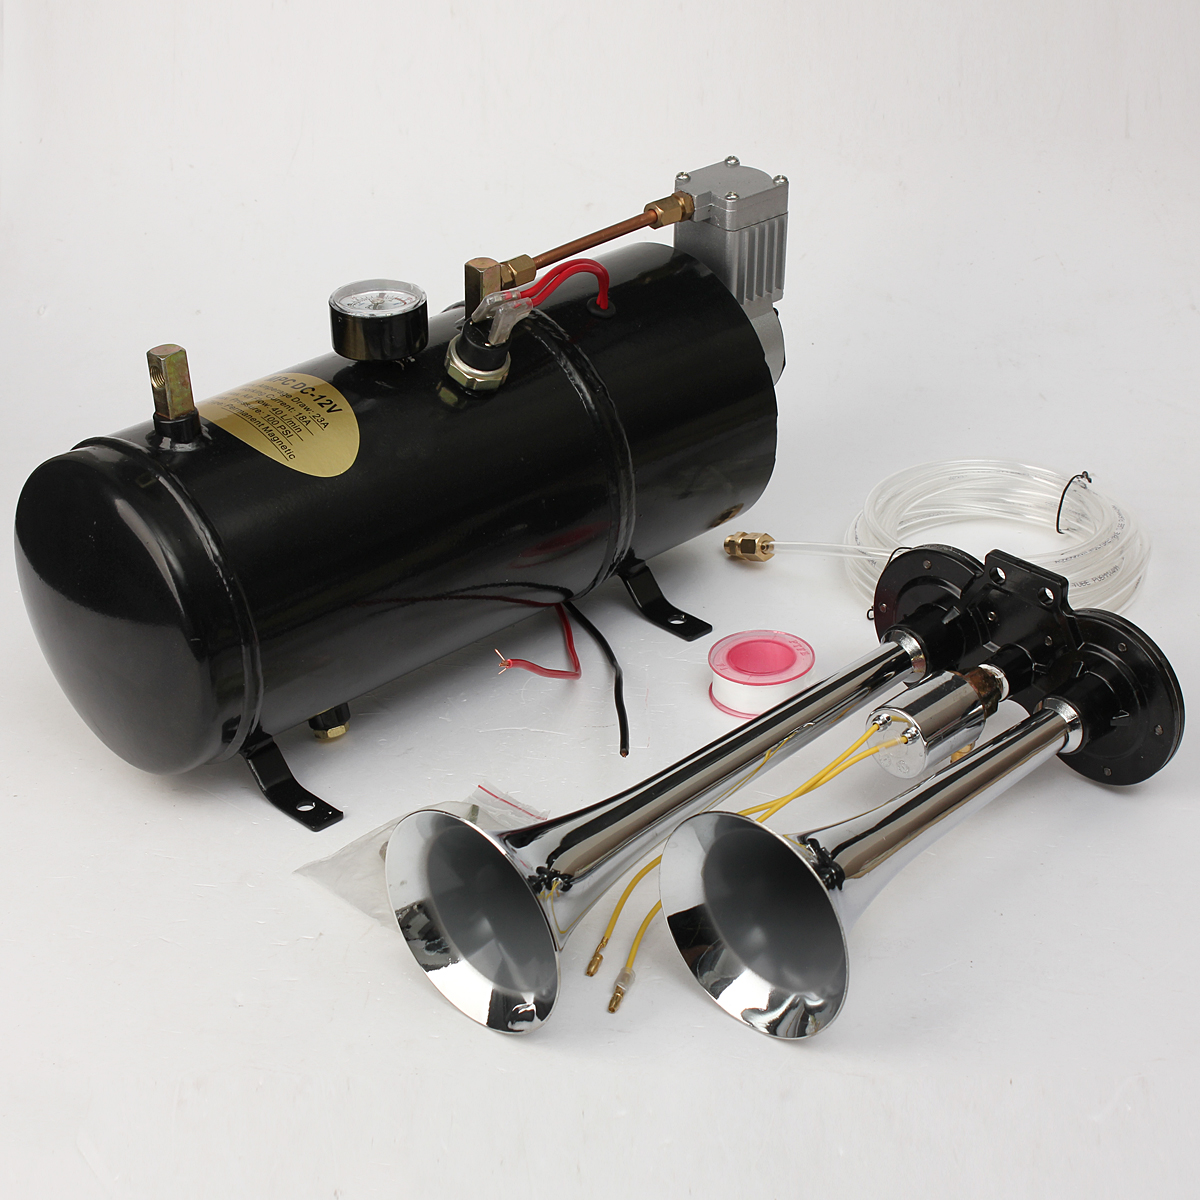 

Воздушный рожок комплект из двух труба ж / 110 фунтов на квадратный дюйм 12-вольтовый компрессор бак и датчик